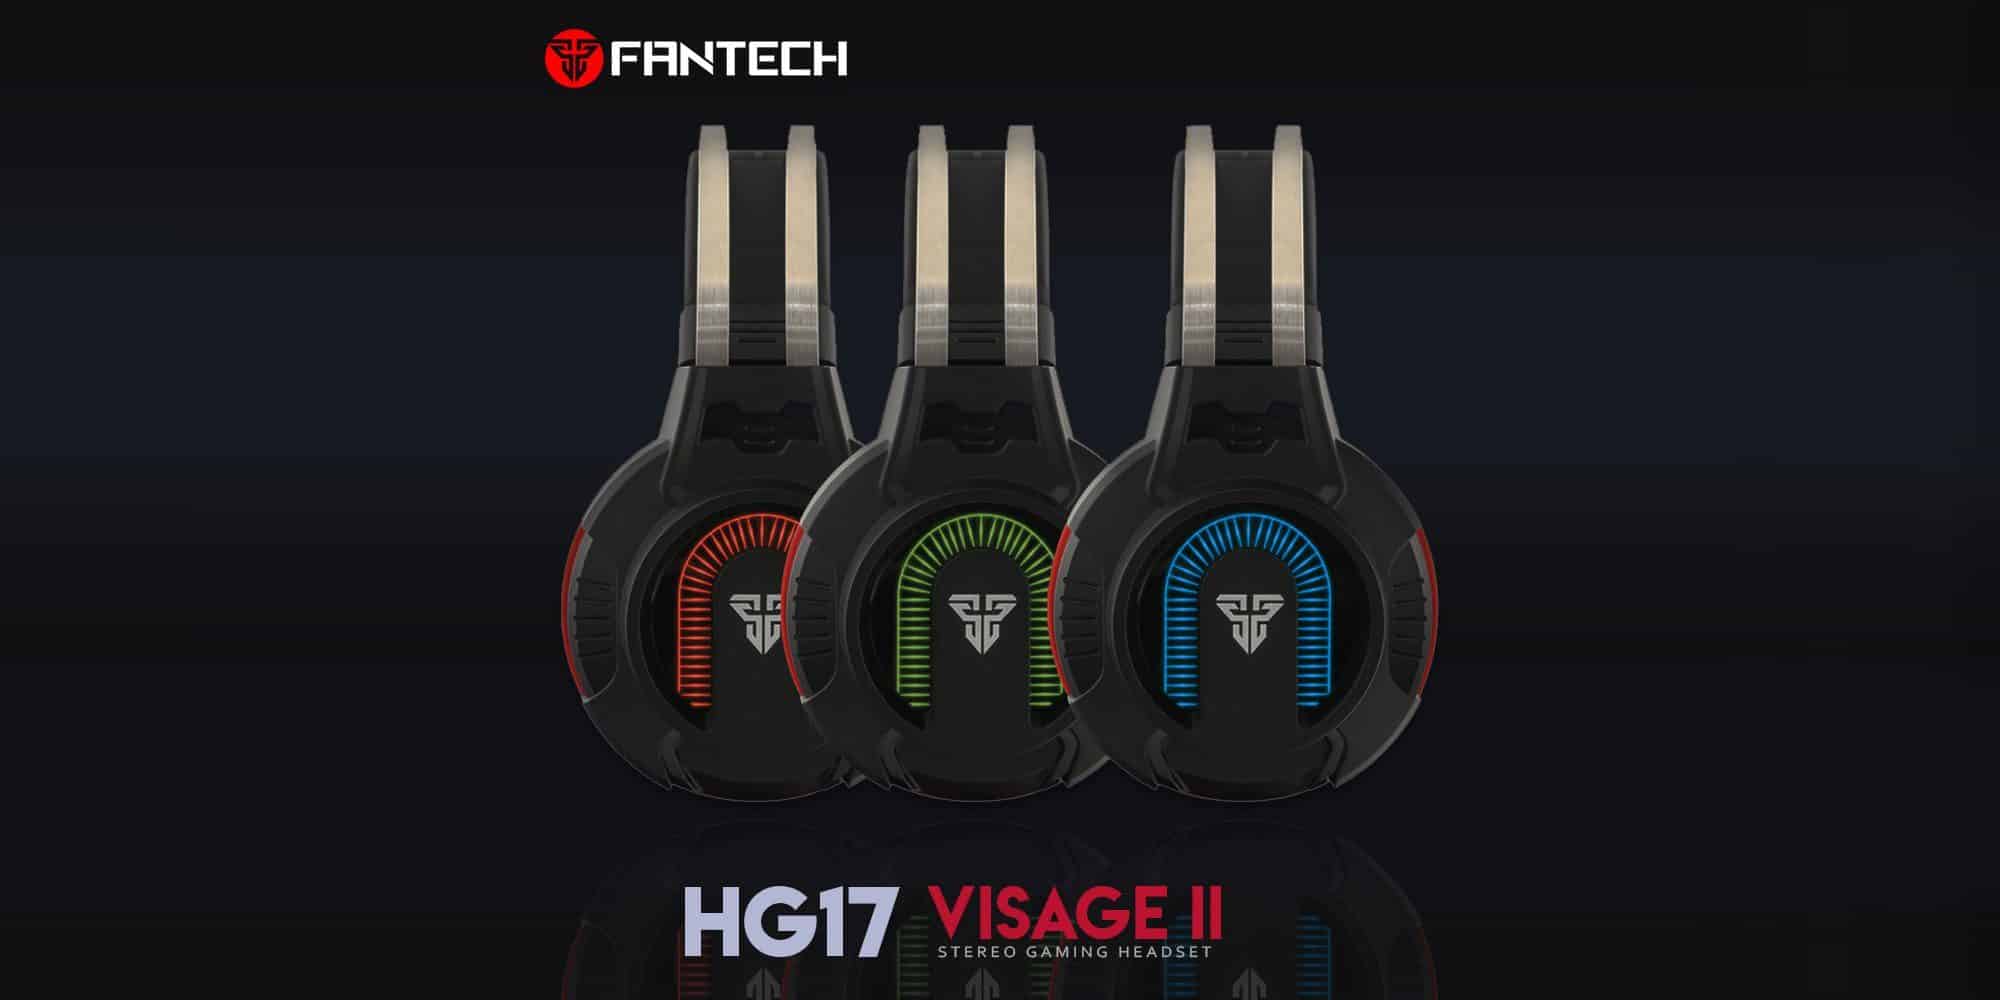 Fantech Visage II HG17